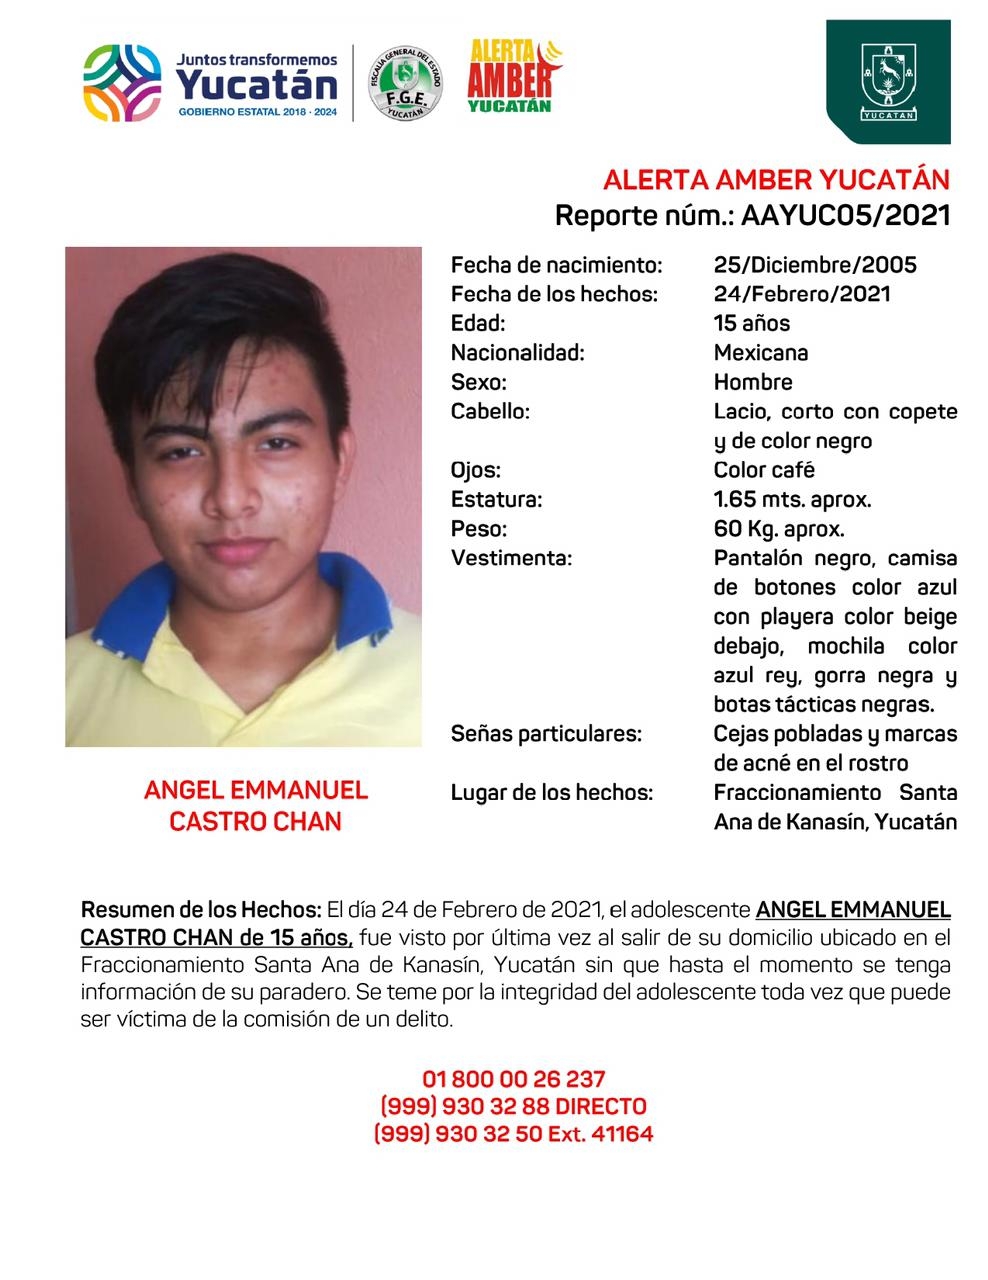 Desaparece joven de 15 años en Kanasín; activan Alerta Amber